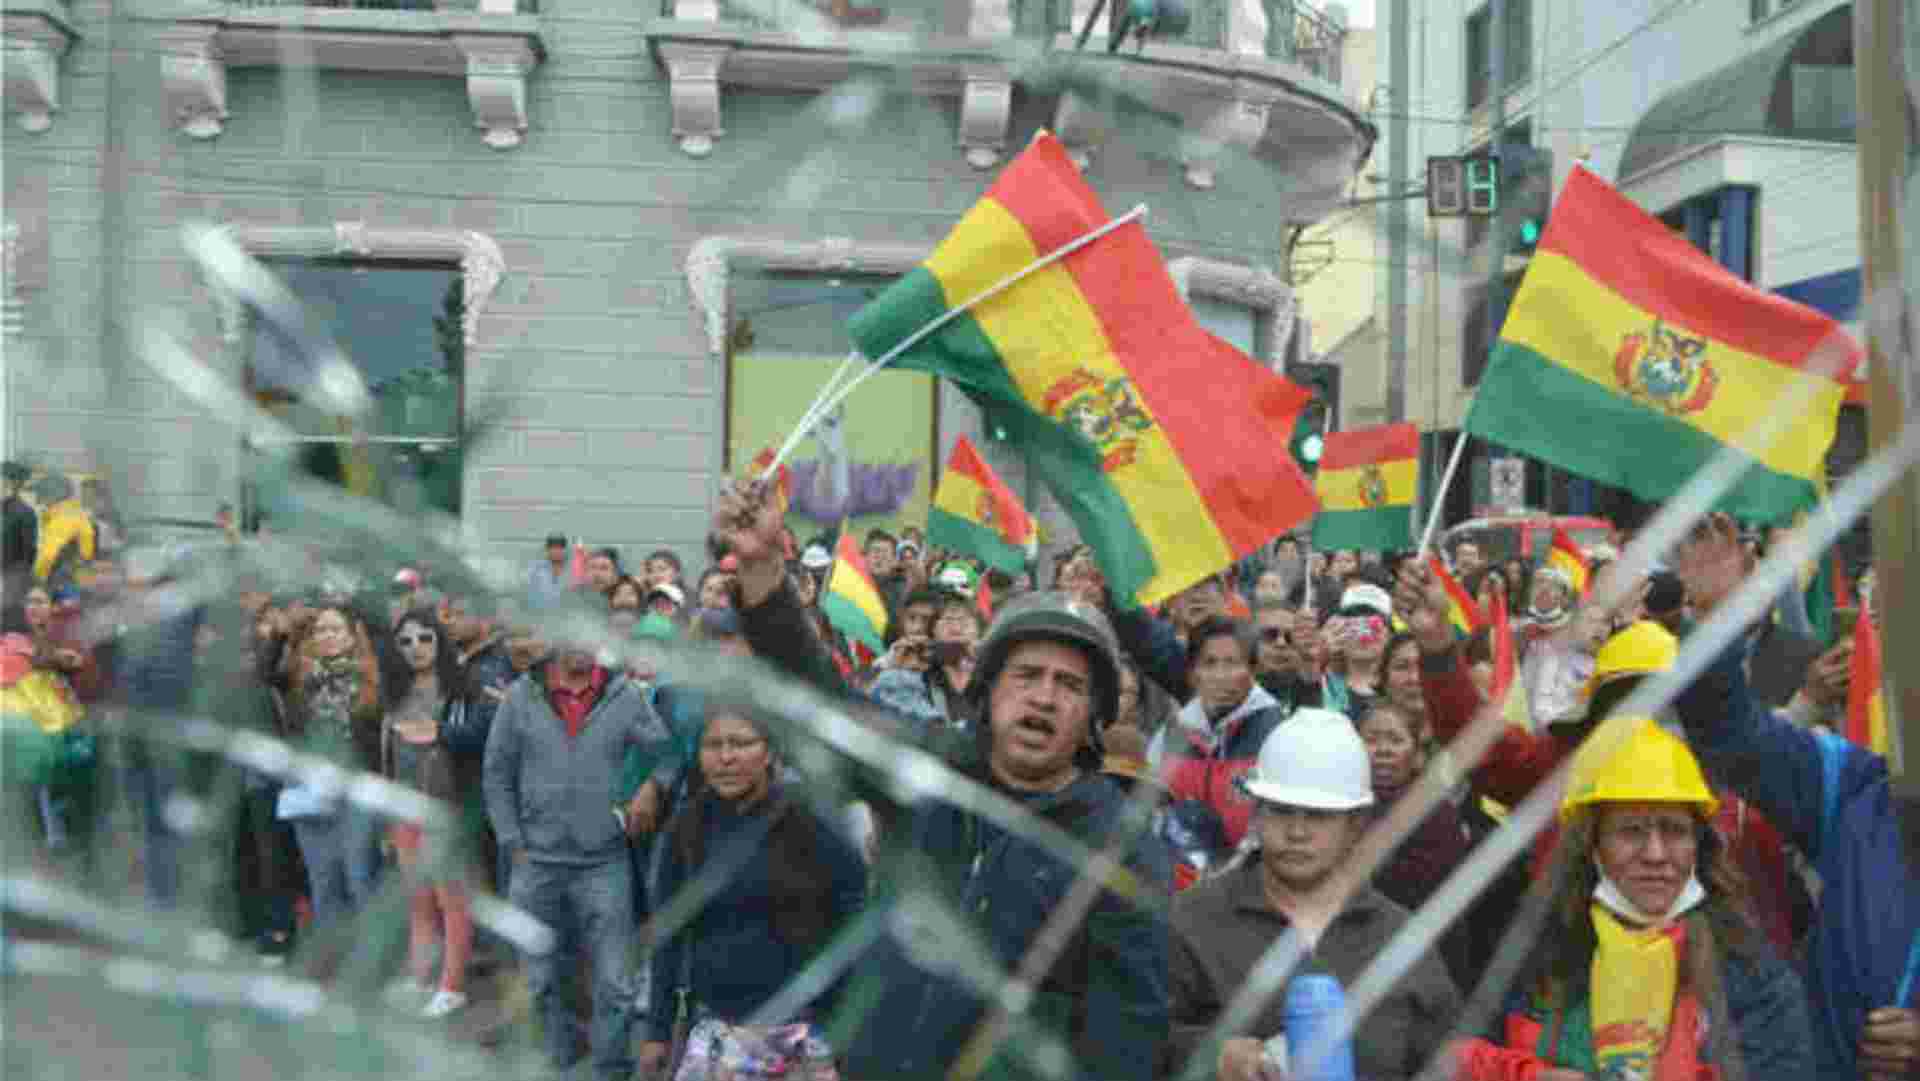 Evo Morales Bolivia